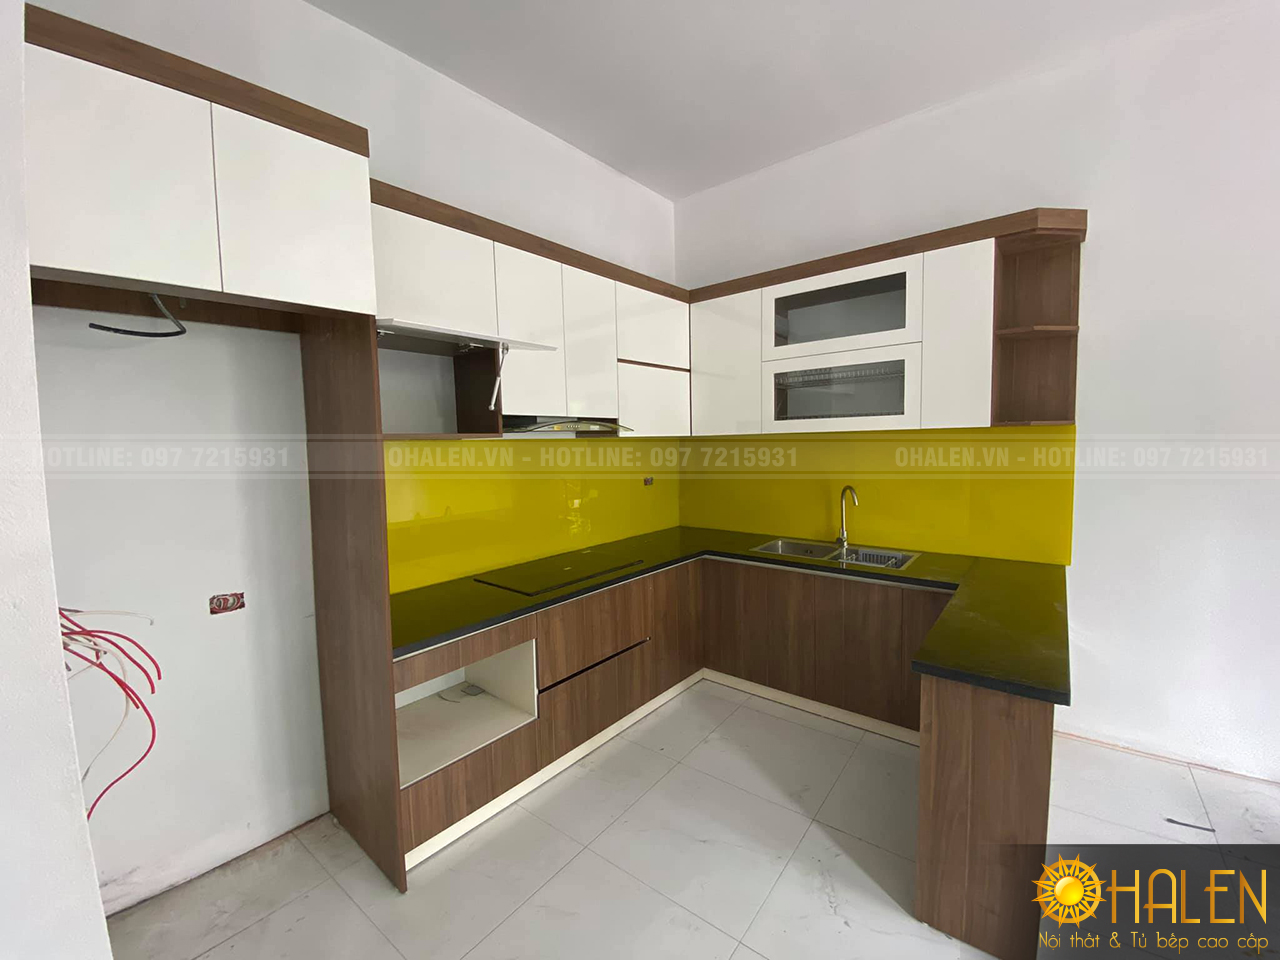 OHALEN đóng tủ bếp giá rẻ tại Quốc Oai chất liệu Melamine kính bếp màu vàng cho gia chủ